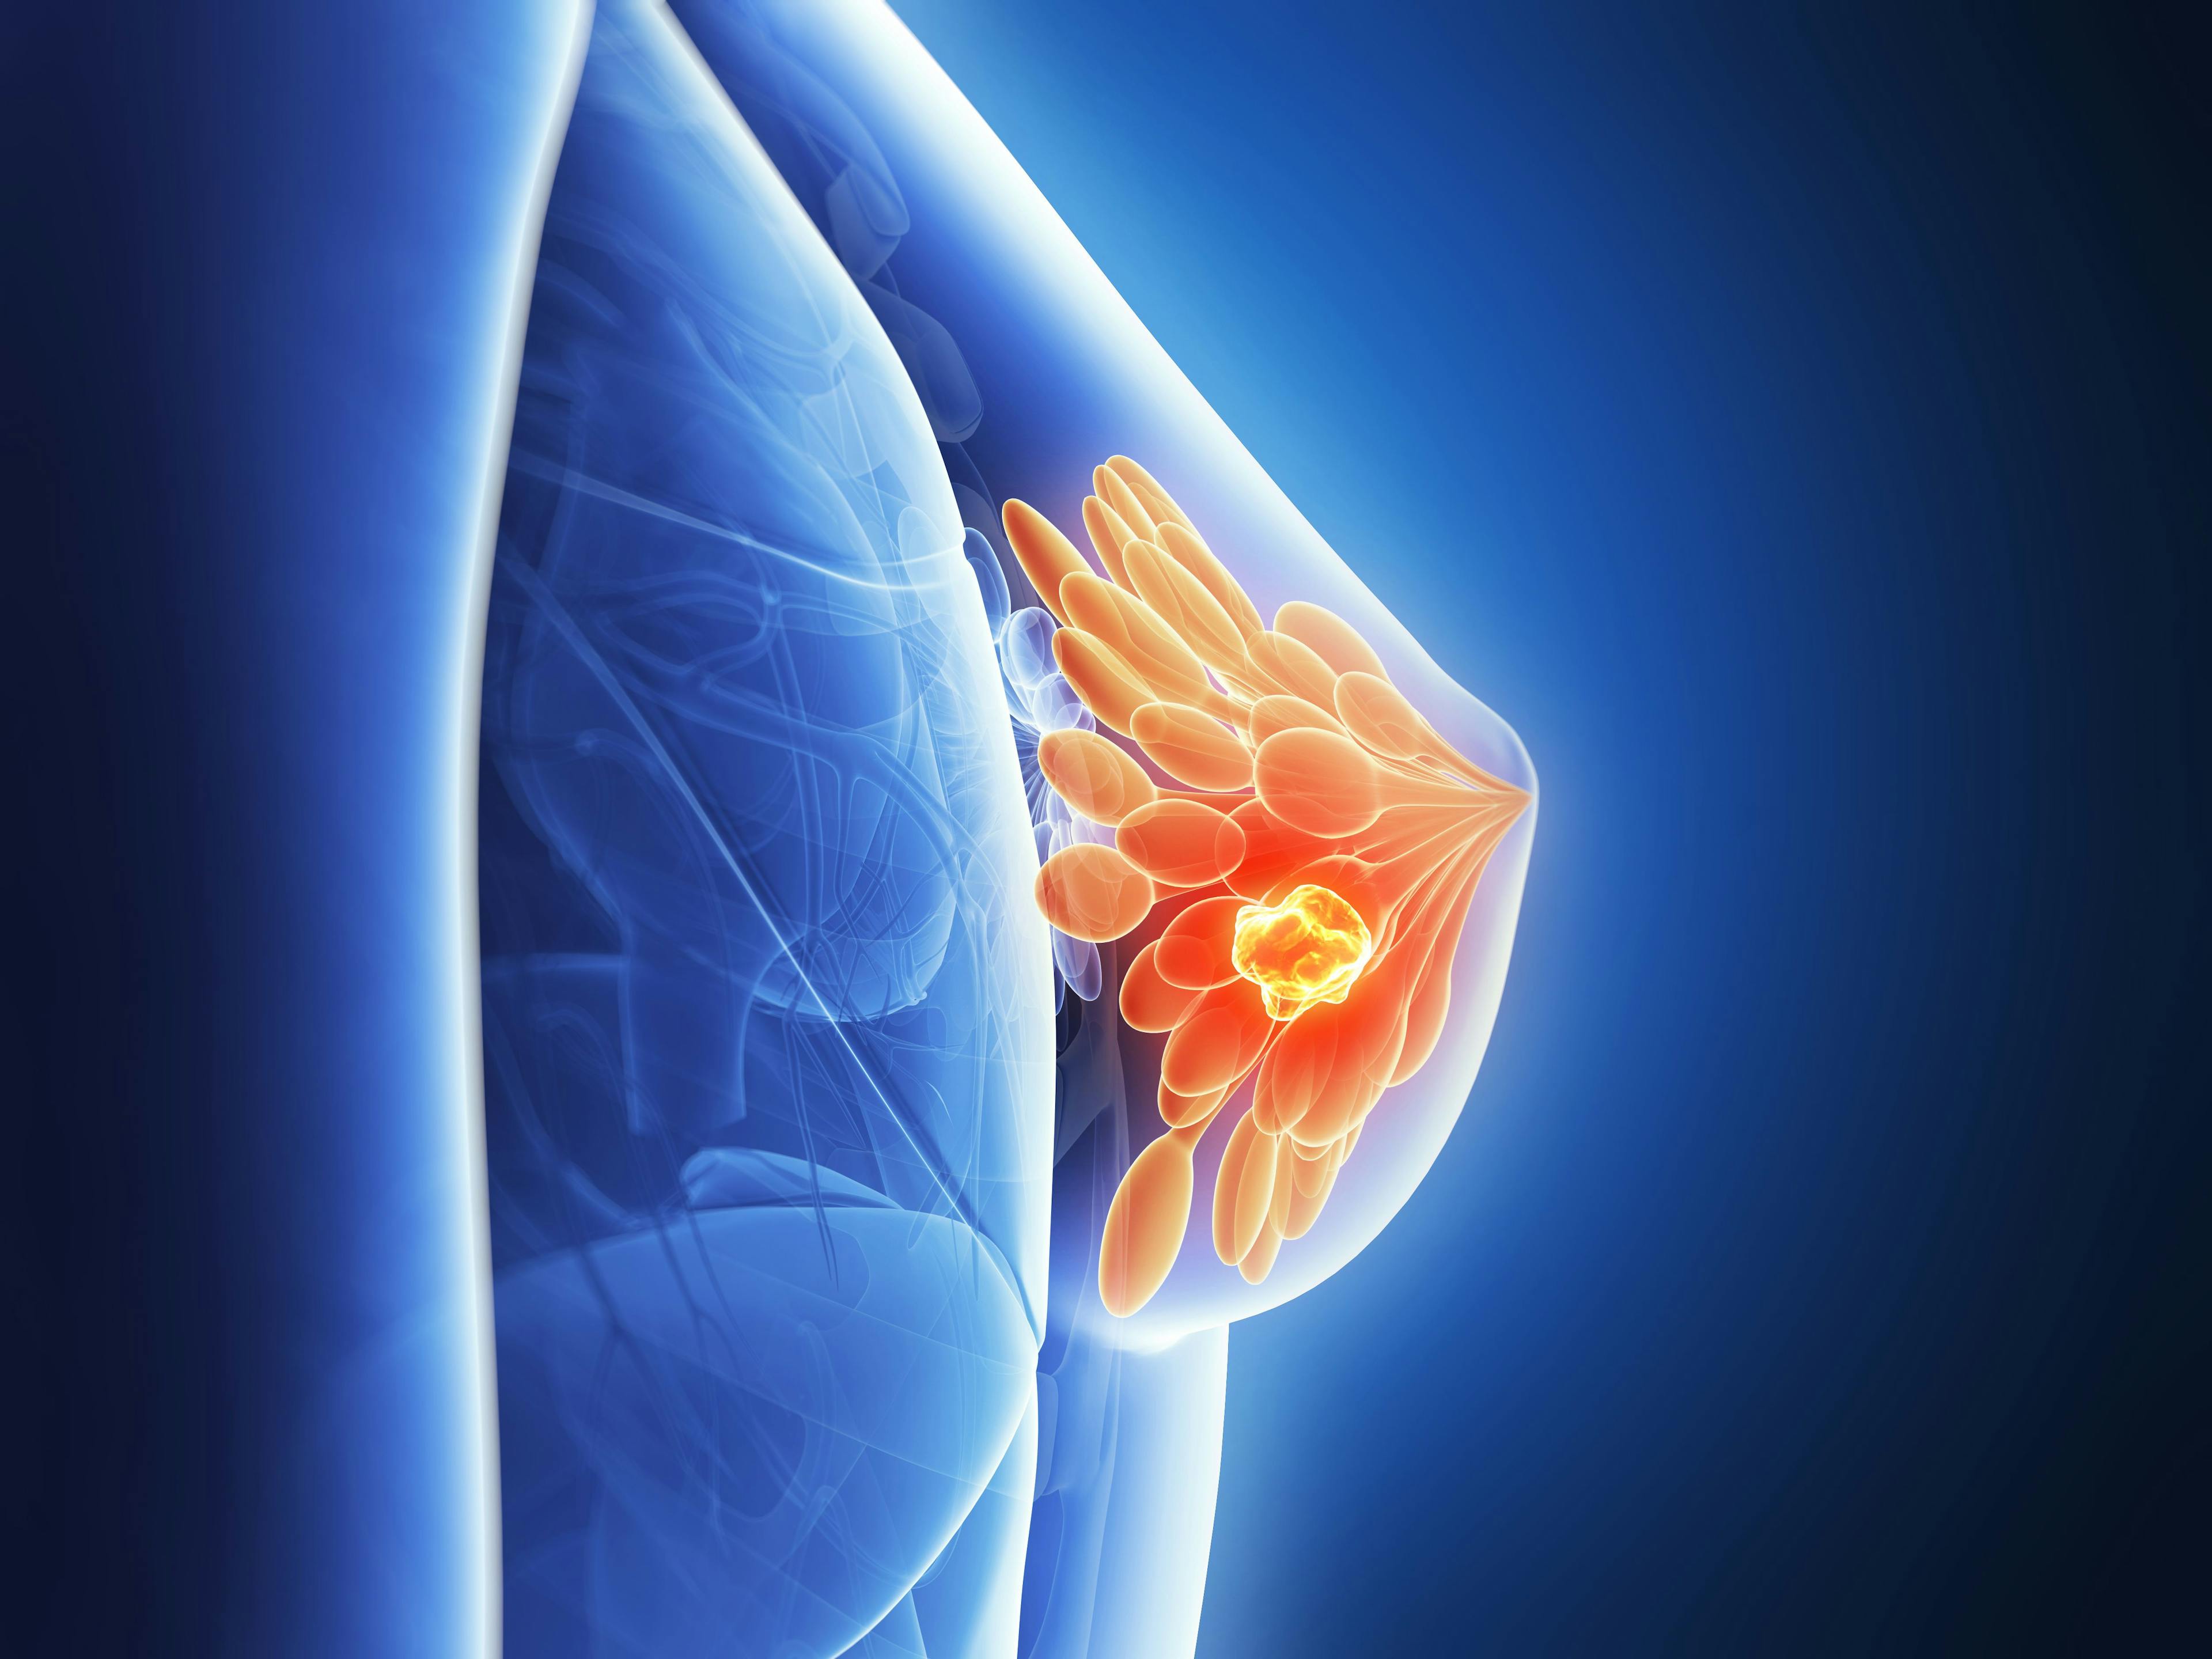 3d rendered illustration - breast cancer | Image Credit: SciePro - stock.adobe.com